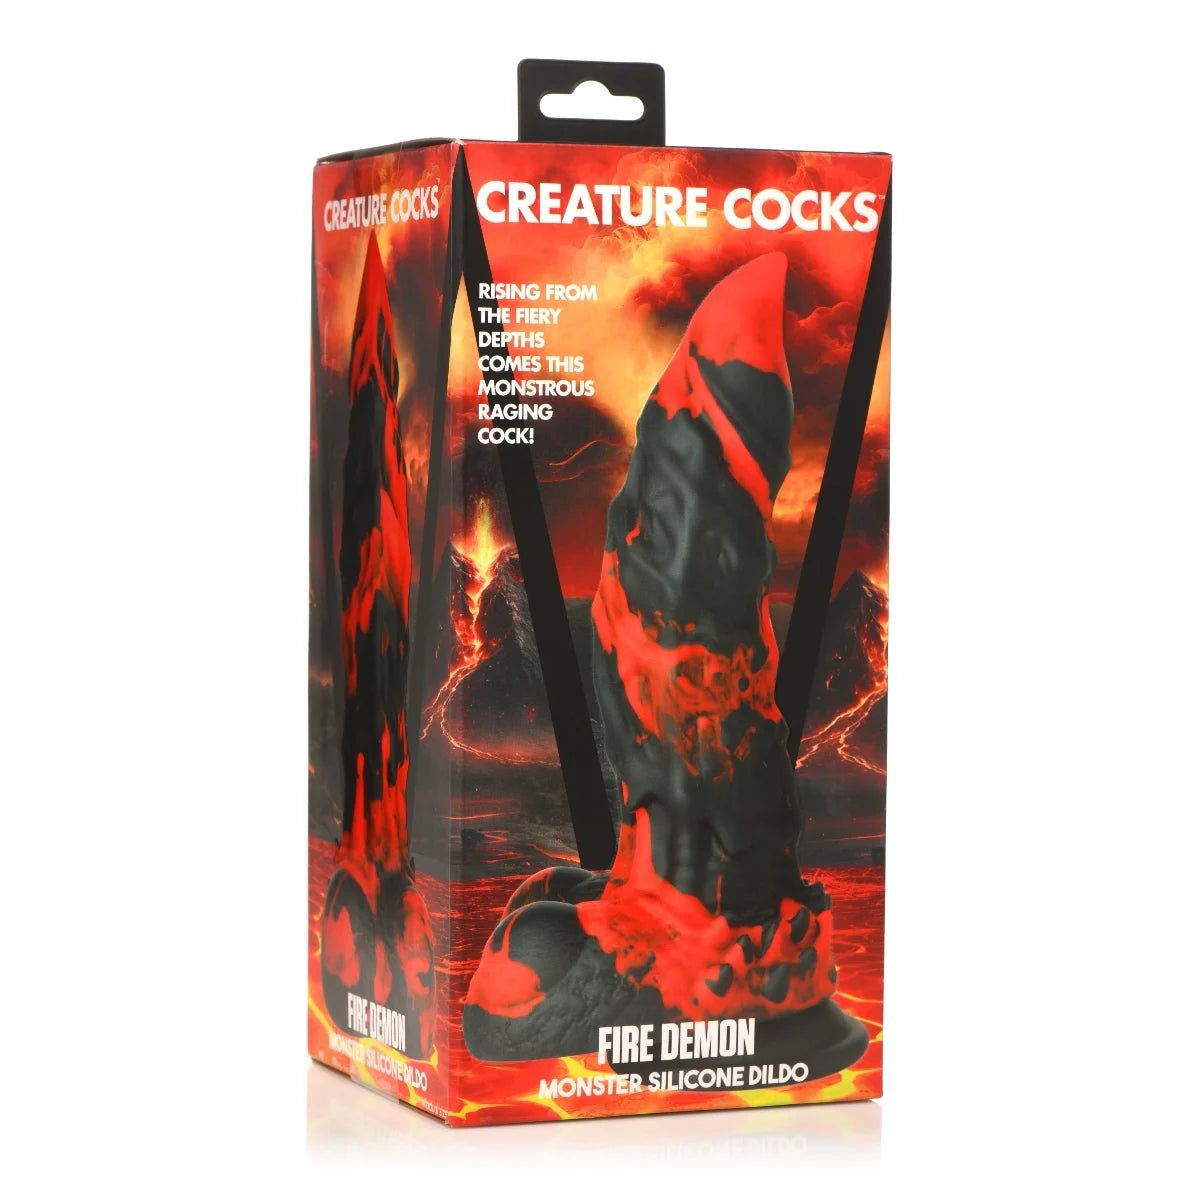 Creature Cocks Fire Demon Monster Silicone Dildo (8274282807535)